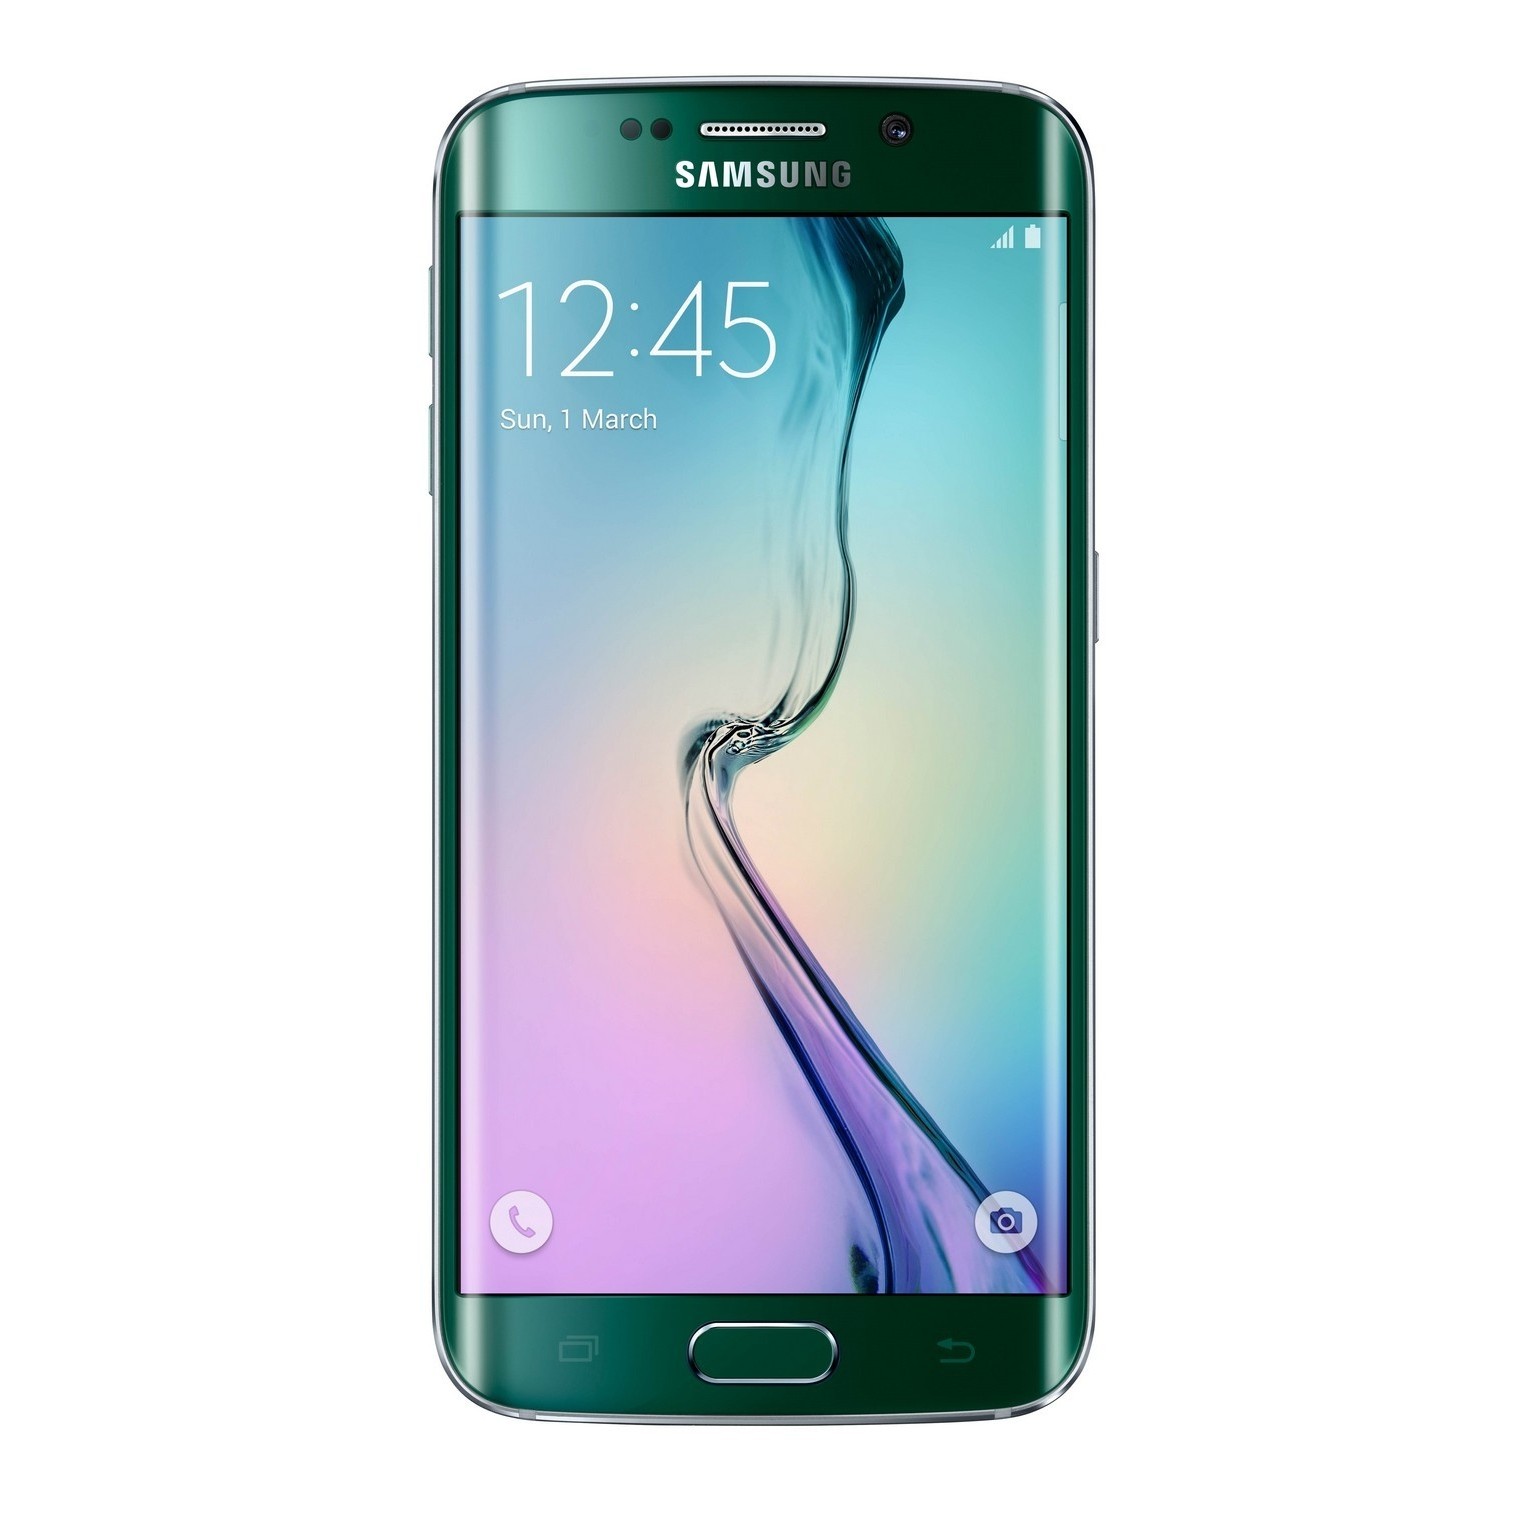 Samsung G925F Galaxy S6 Edge 32GB (Green Emerald) - зображення 1